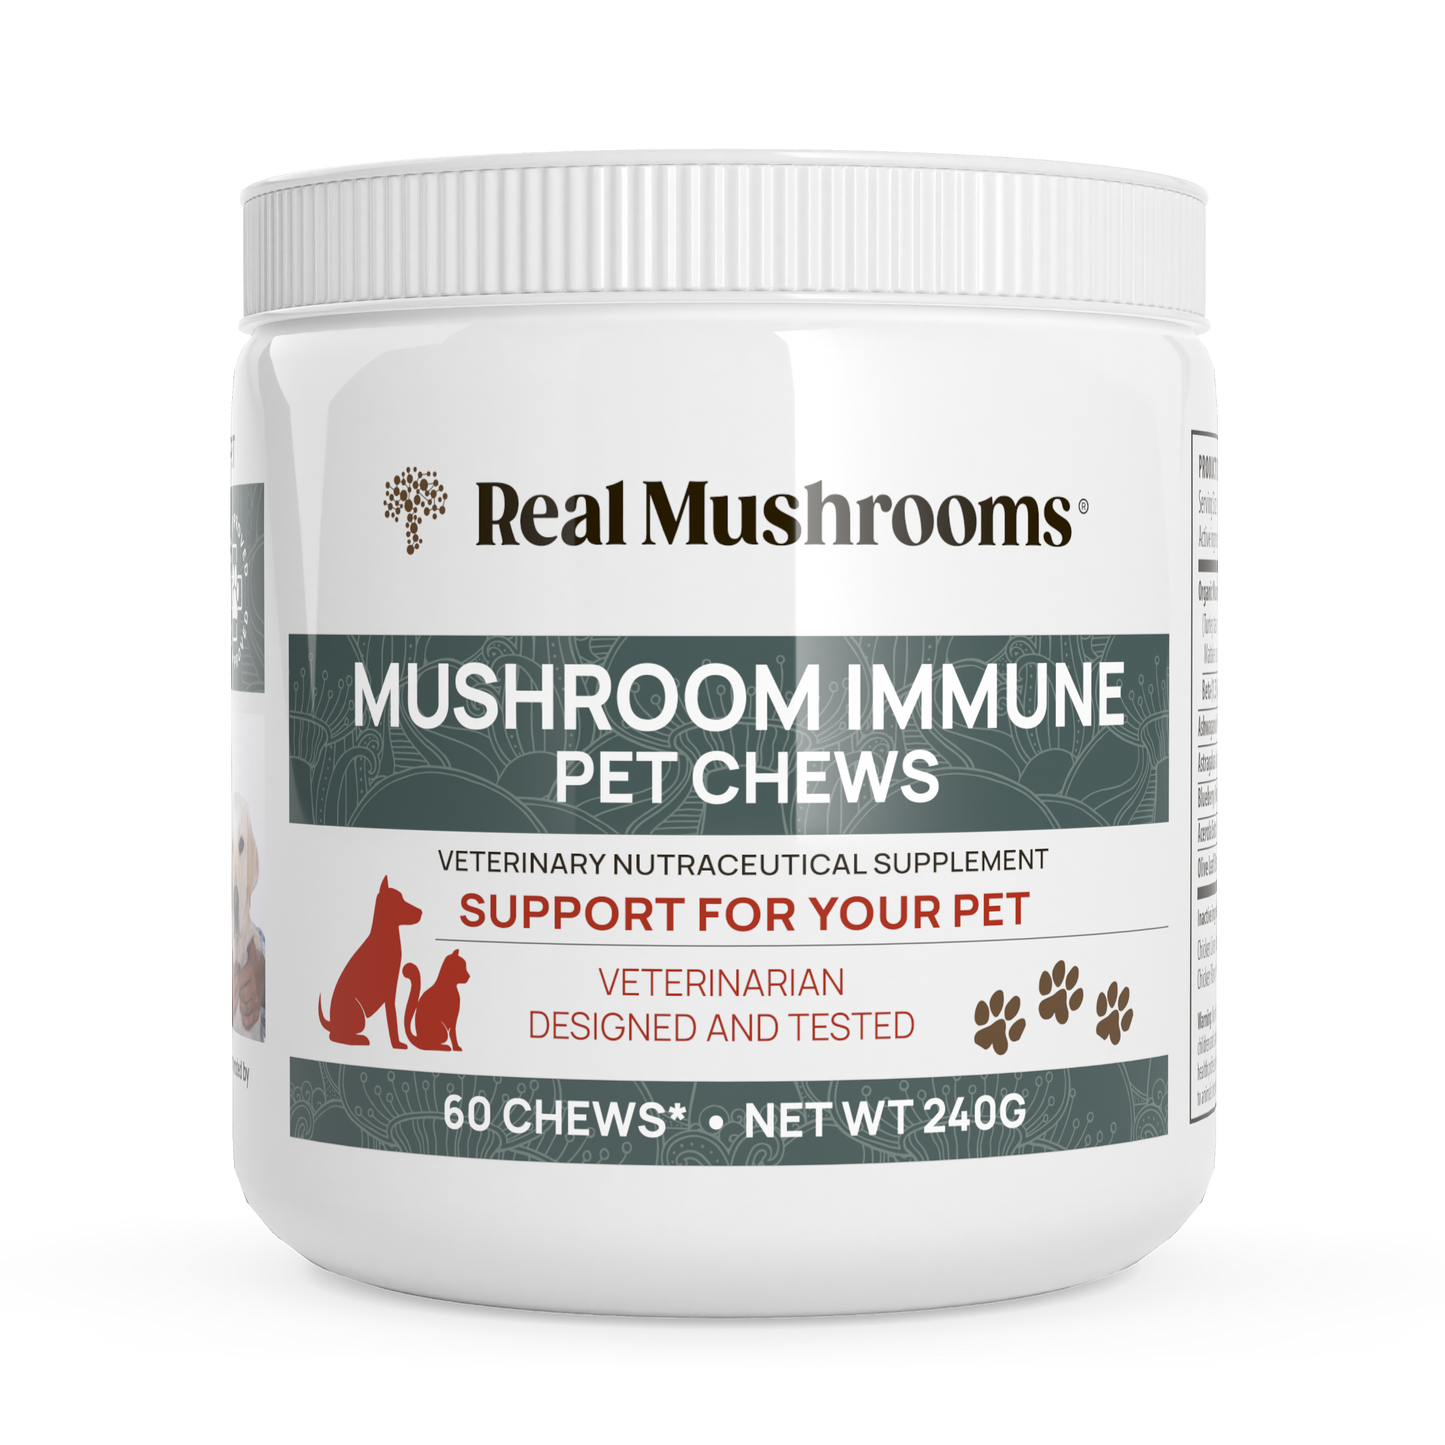 Real Mushrooms' Mushroom Immune Pet Chews.